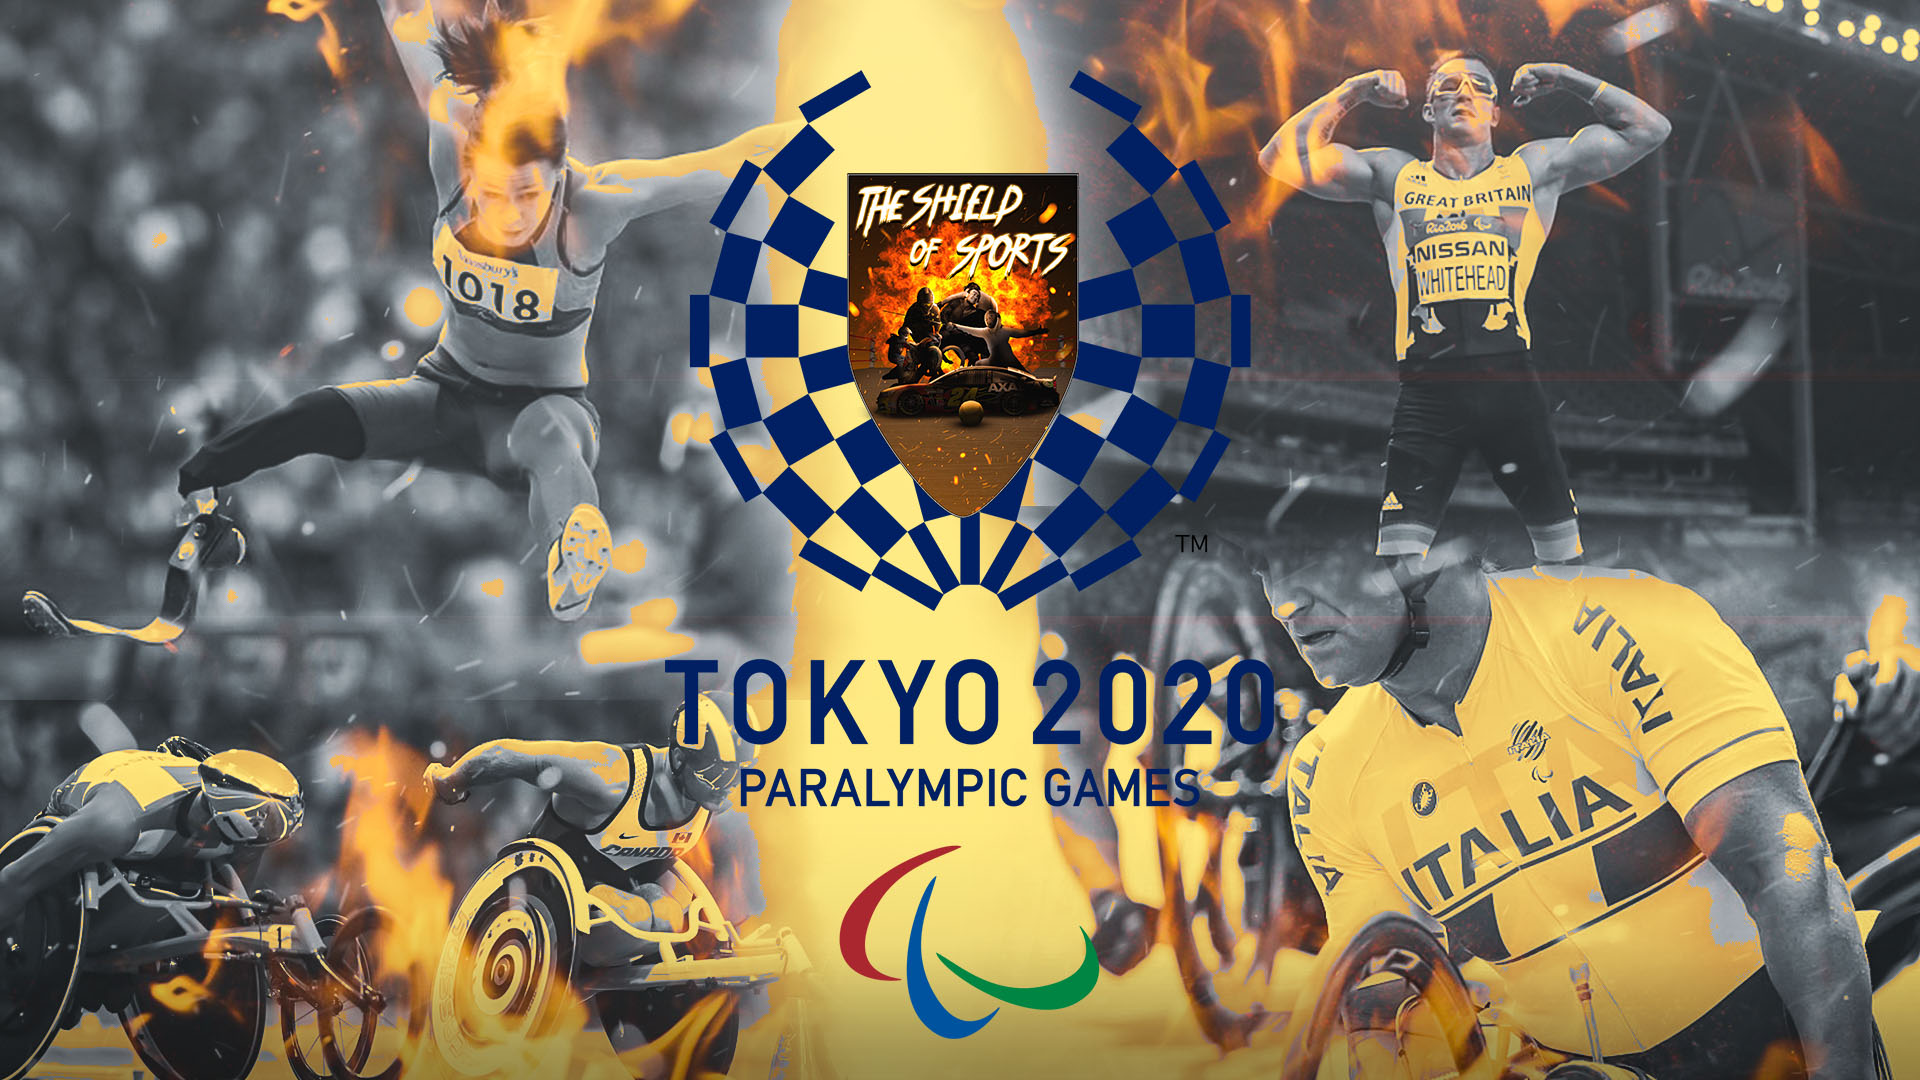 Tennis in carrozzina a Tokyo 2020: La quarta giornata